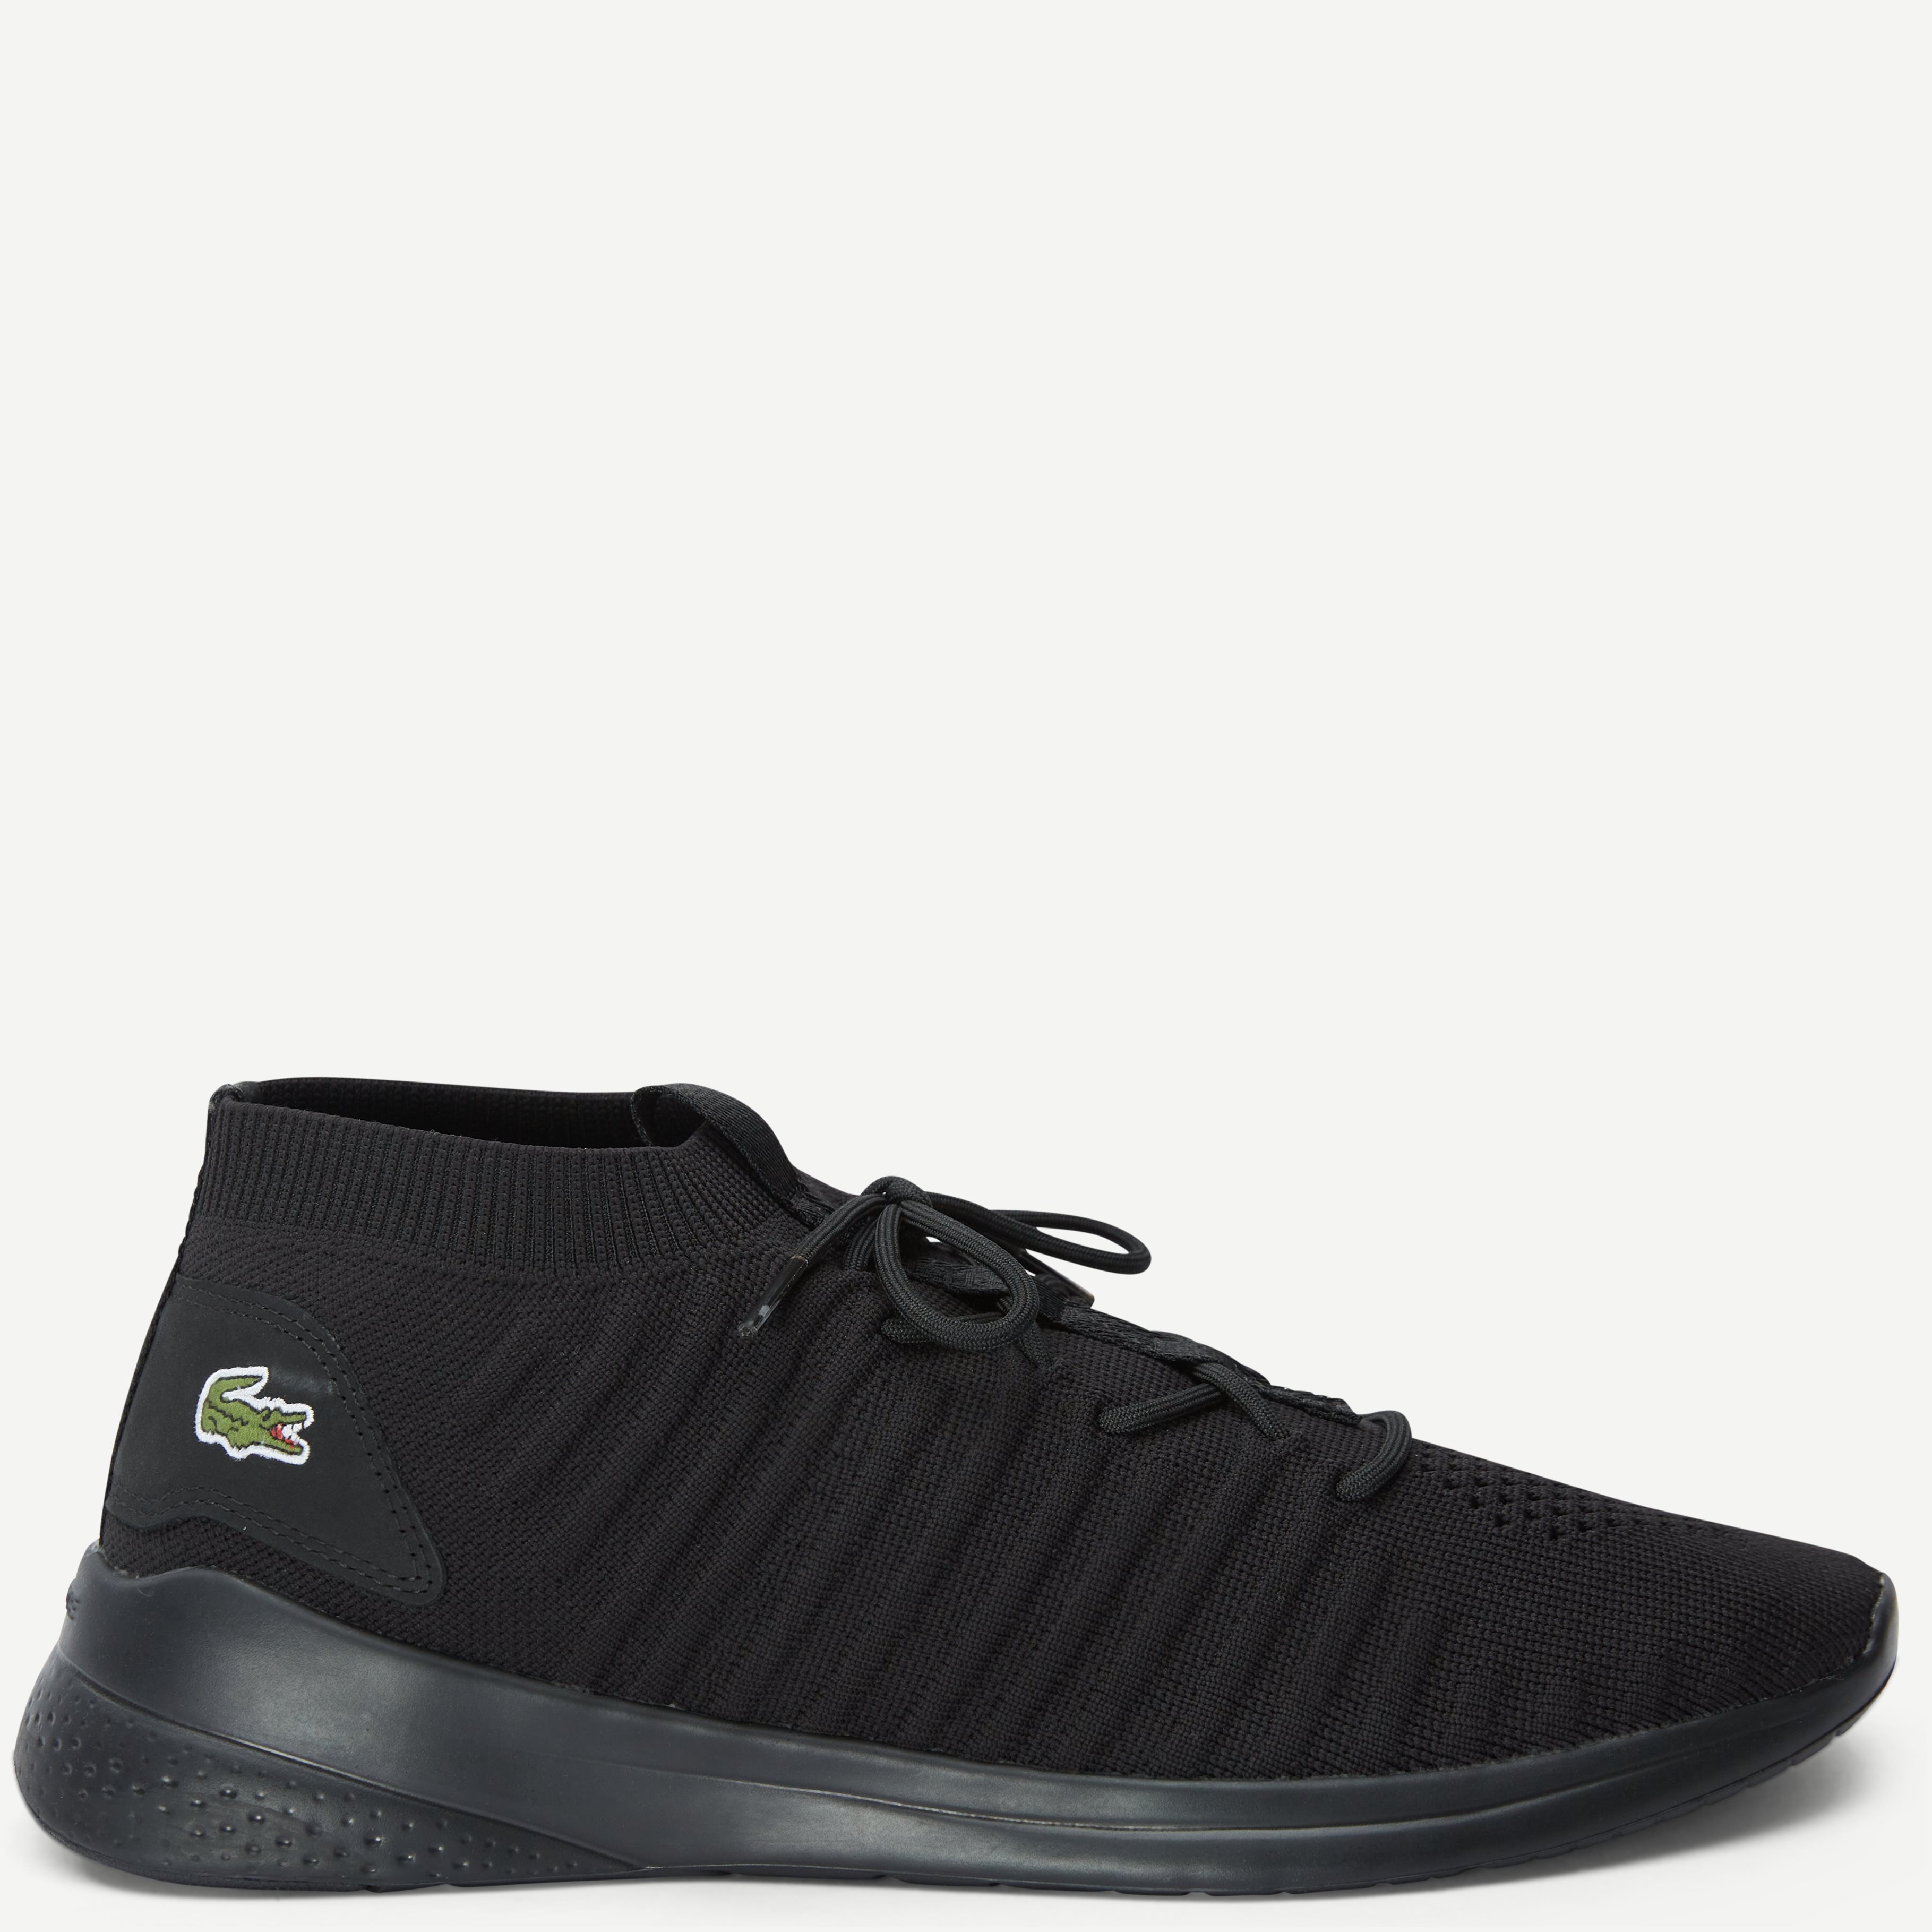 LT FIT Flex 319 Sneaker - Shoes - Black